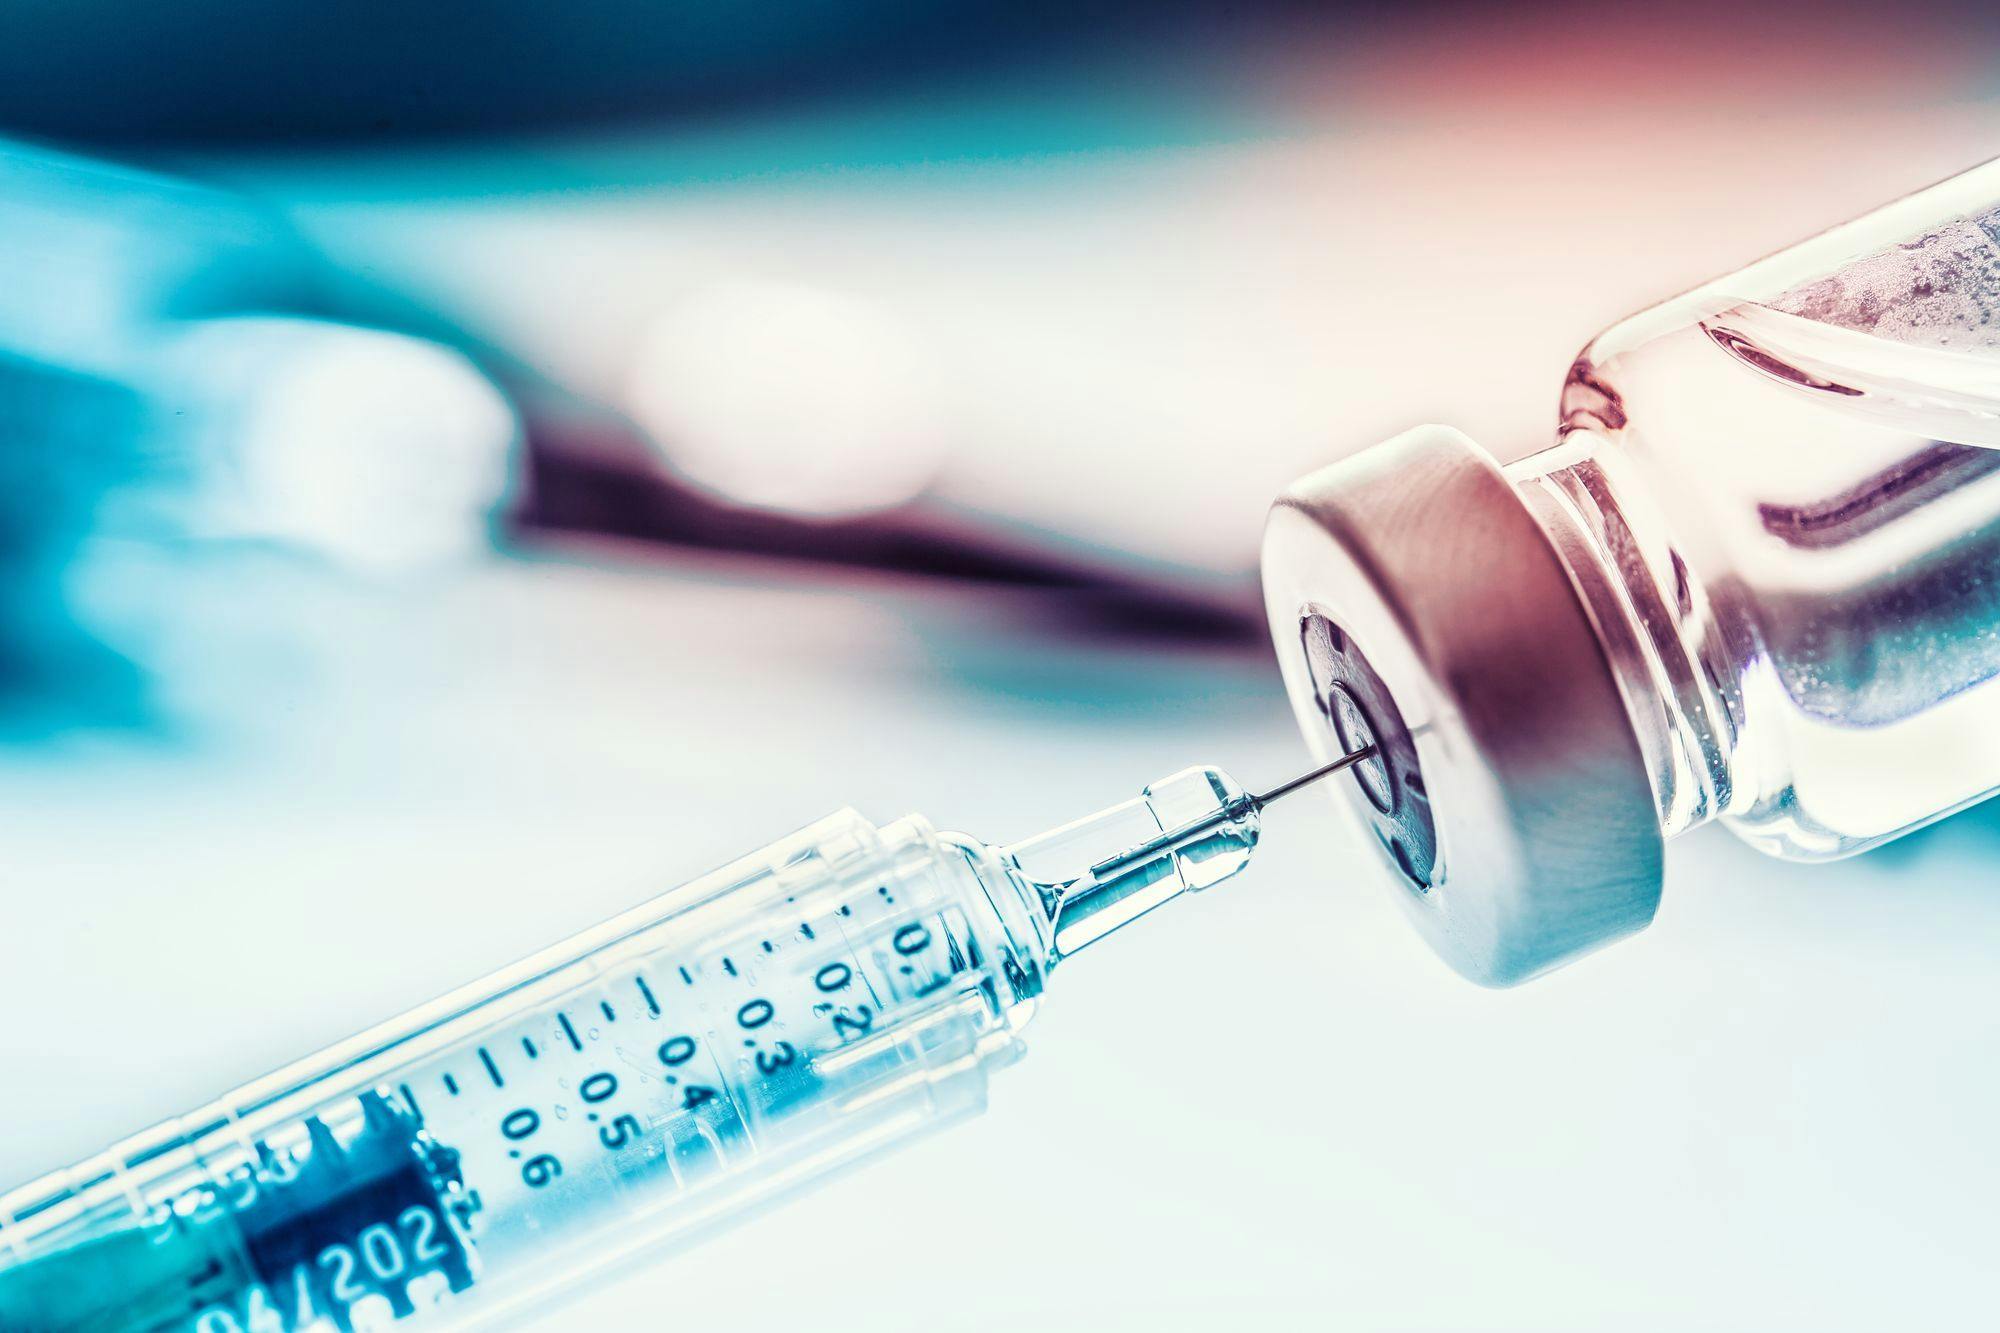 Needle and vaccine